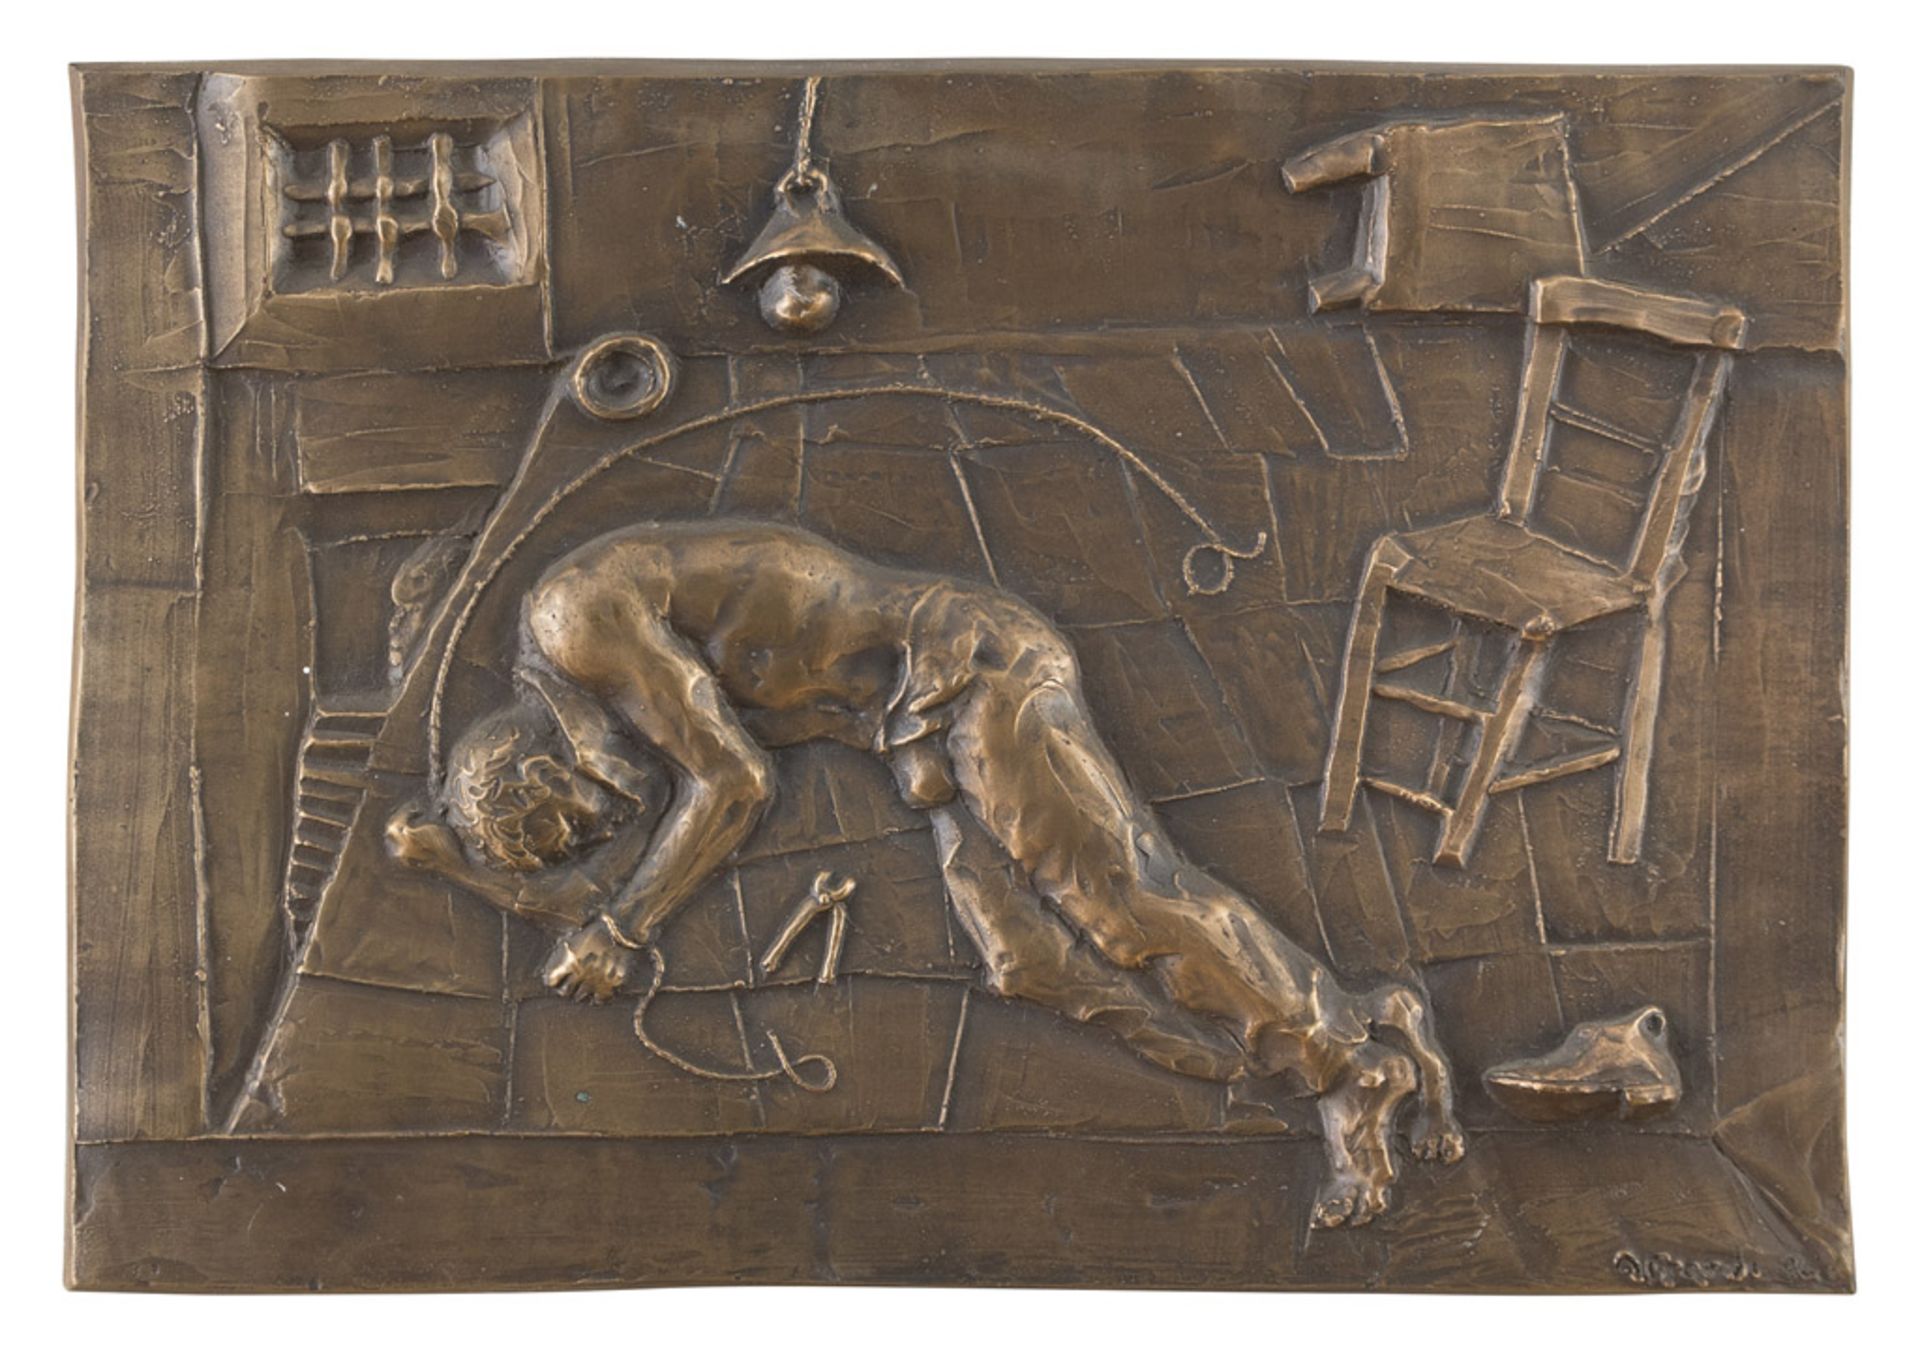 UGO ATTARDI (Sori 1923 - Roma 2006) Per la libertà, 1986 Bassorilievo in bronzo, cm. 33,5 x 49 Firma